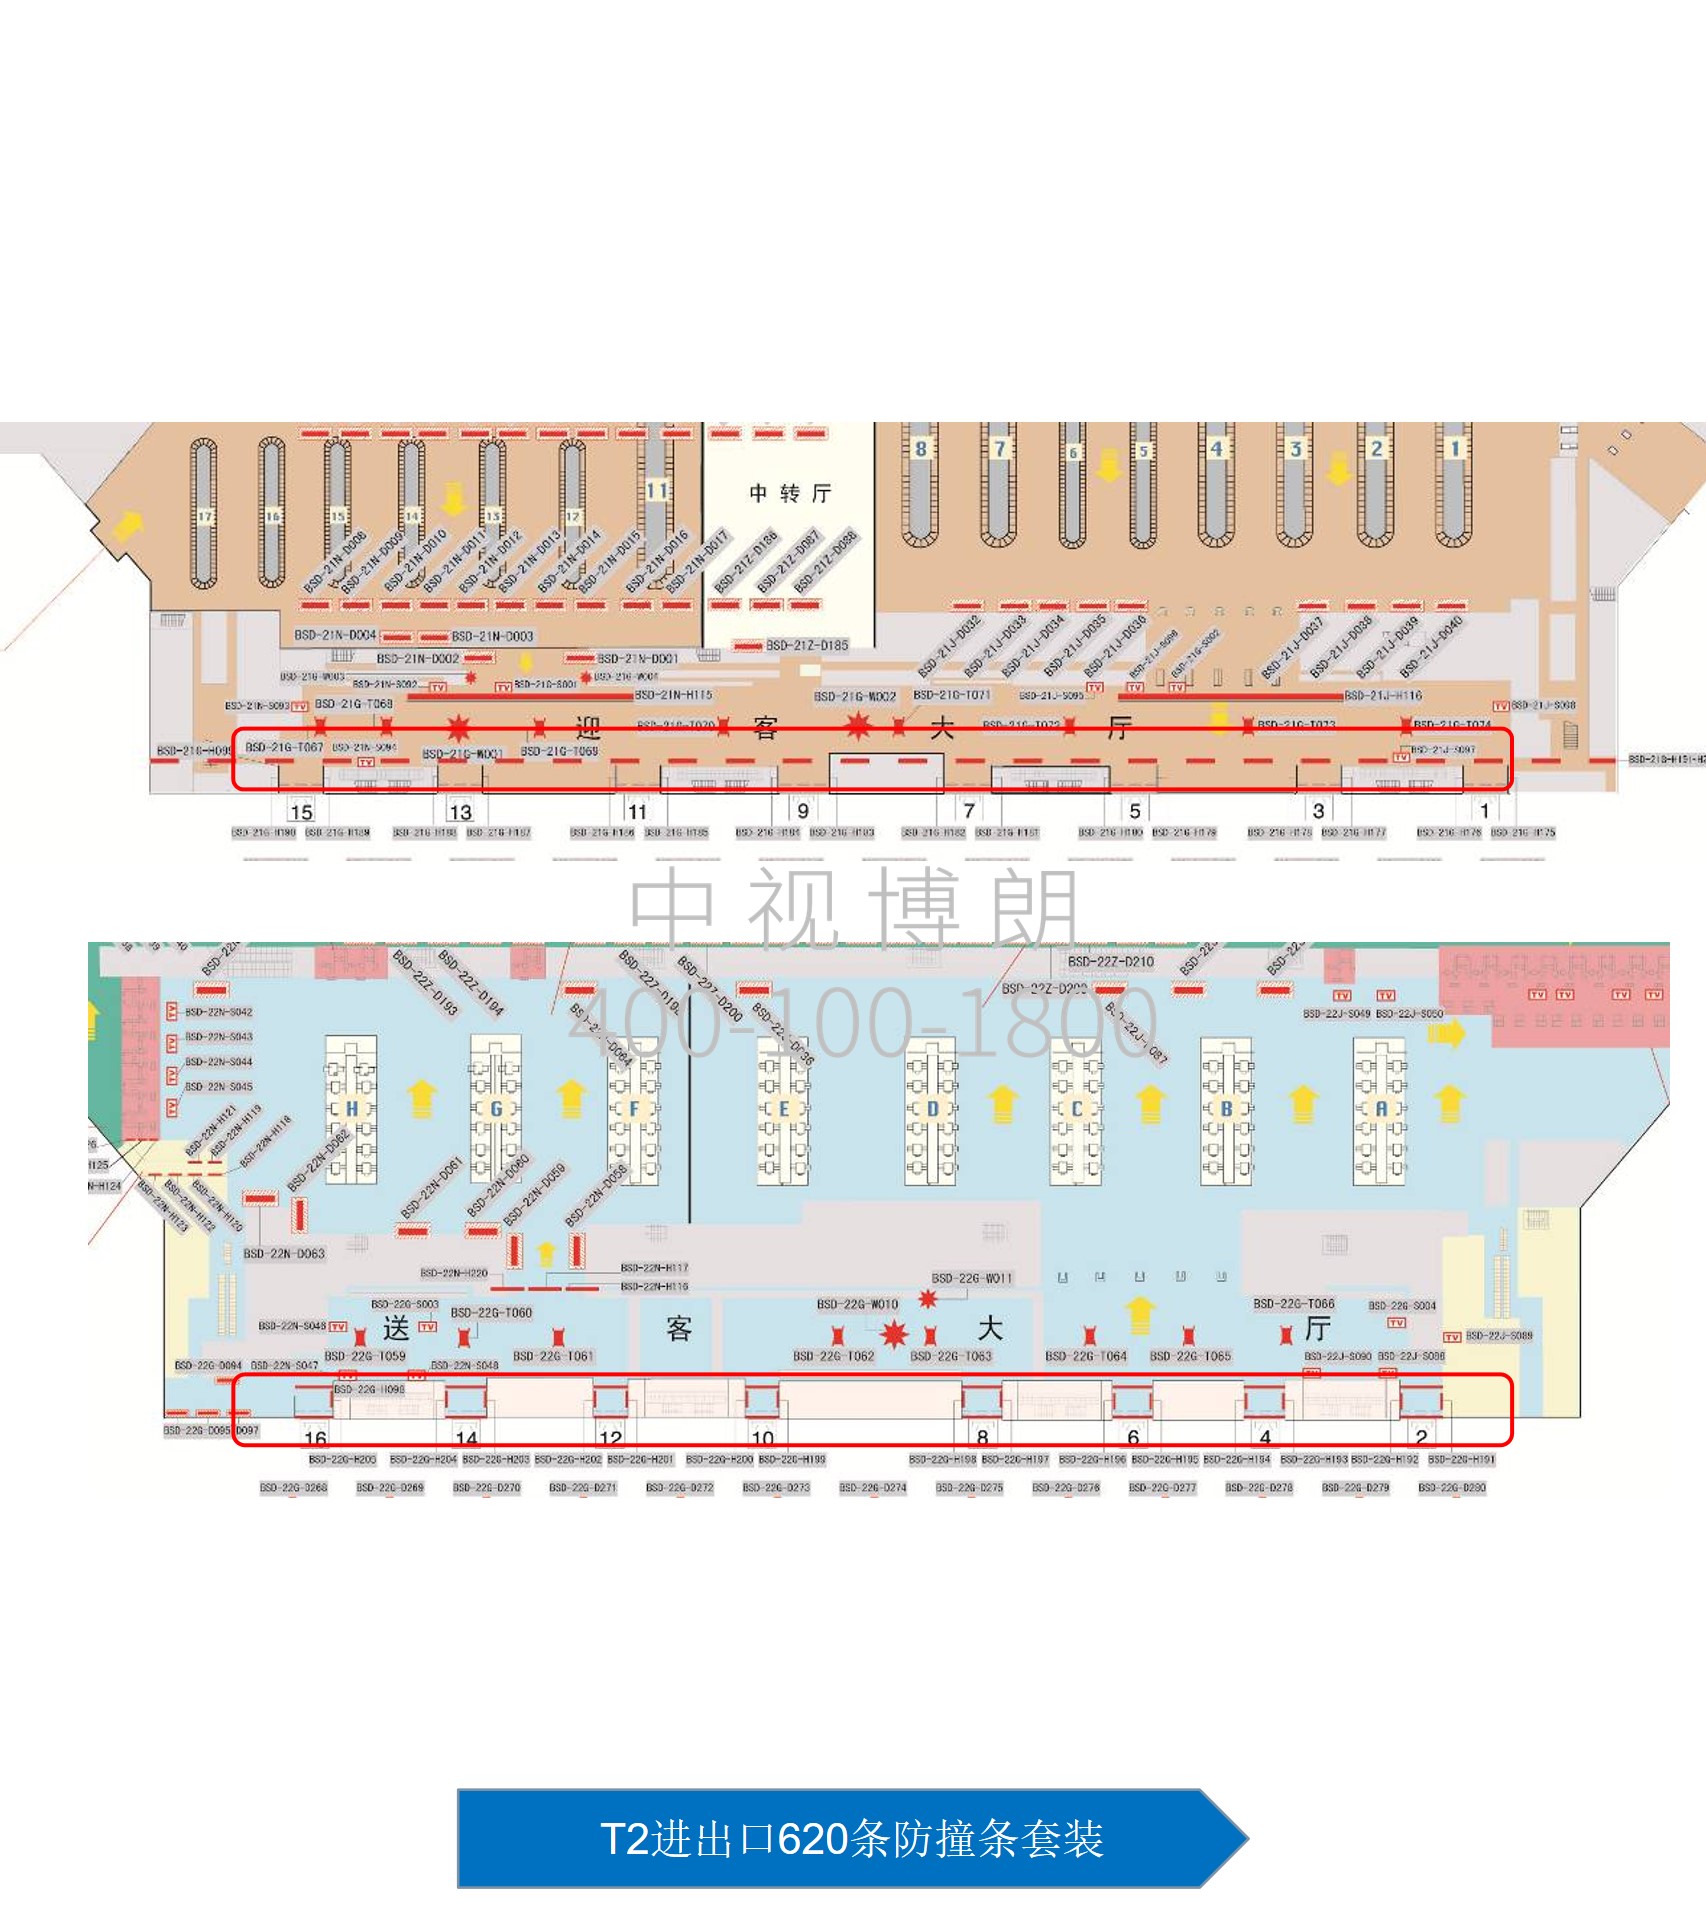 北京首都机场广告-T2 import and export 620 anti-collision strips set位置图